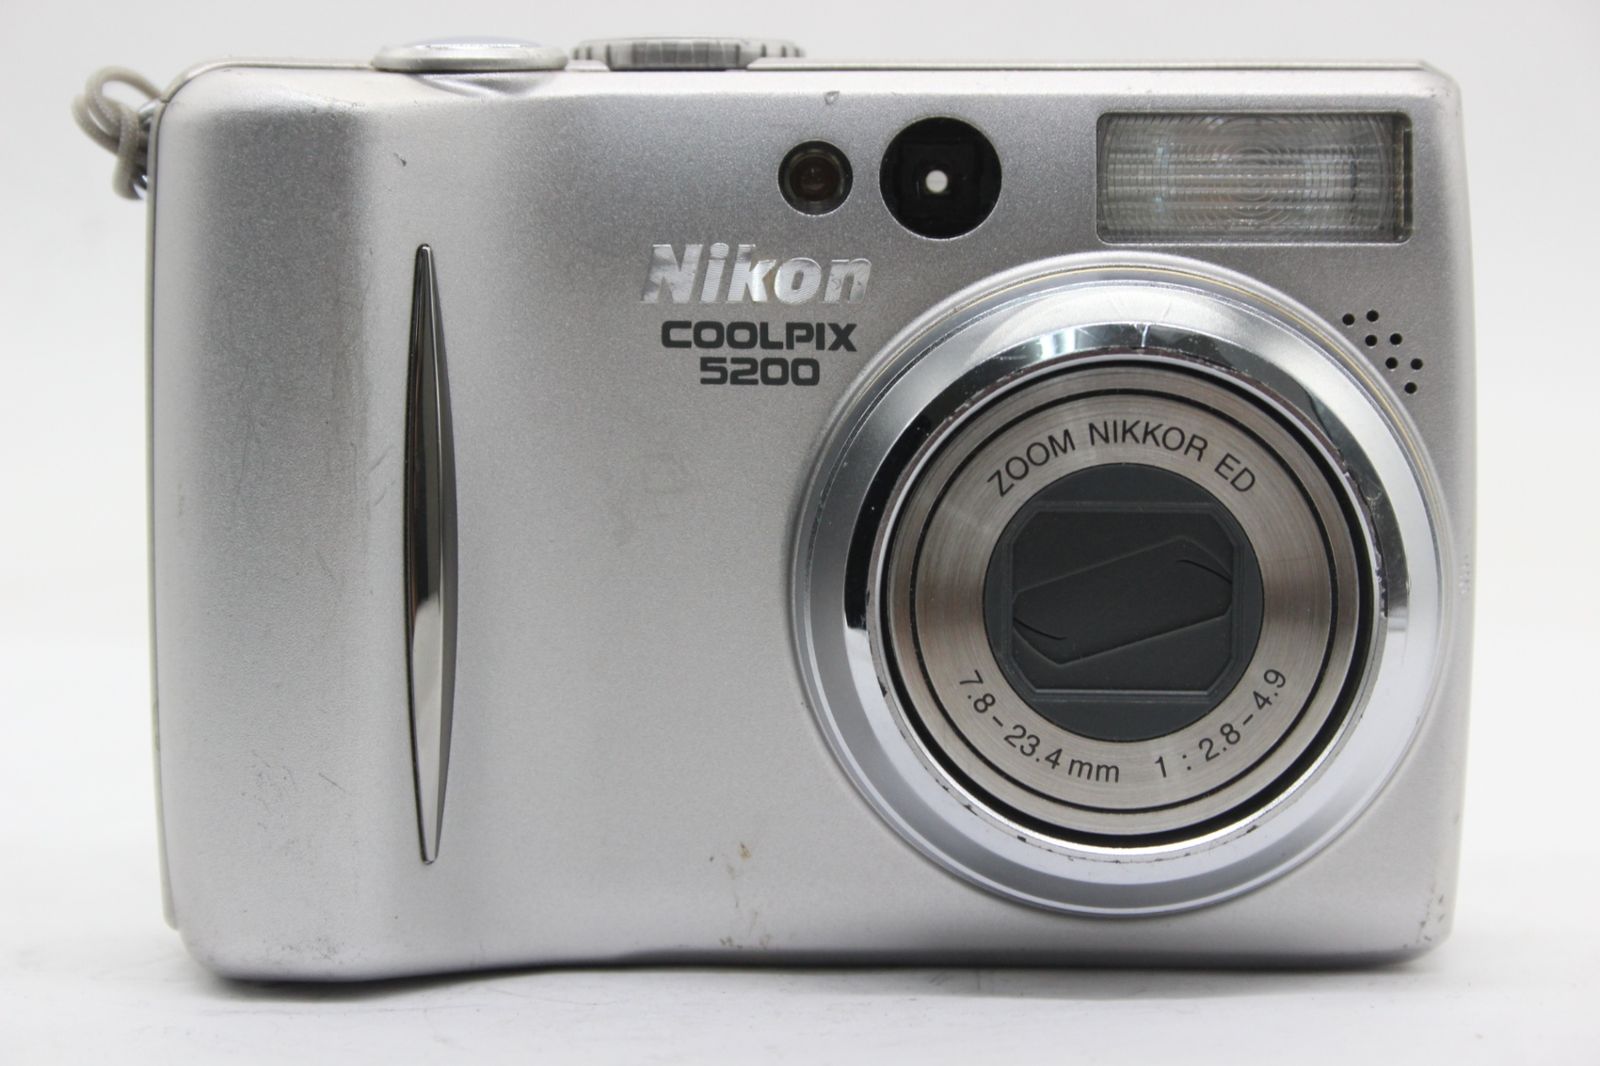 ニコン 【返品保証】 ニコン Nikon Coolpix 5200 バッテリー付き コンパクトデジタルカメラ s9550